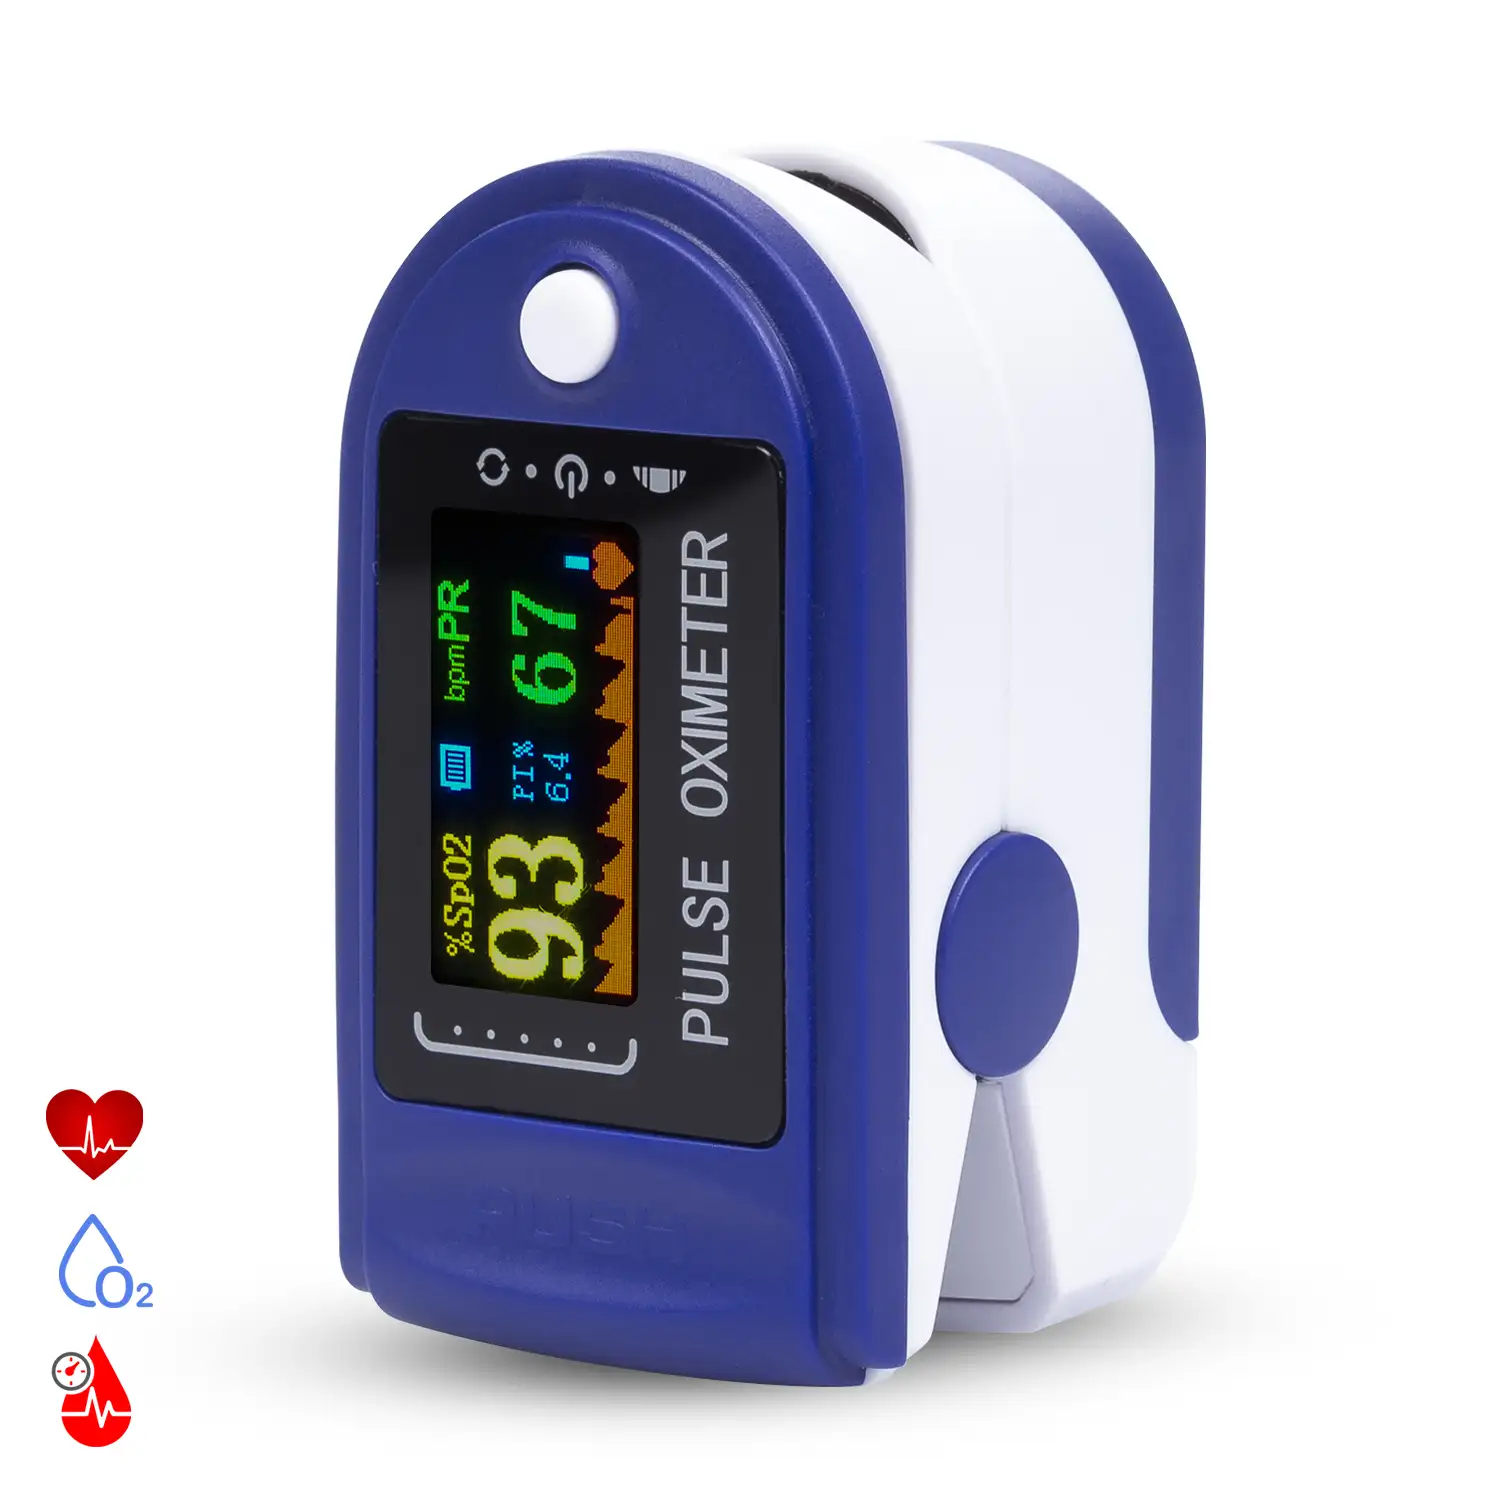 Pulsómetro digital con monitor cardiaco inalámbrico, oxímetro y pantalla a color.